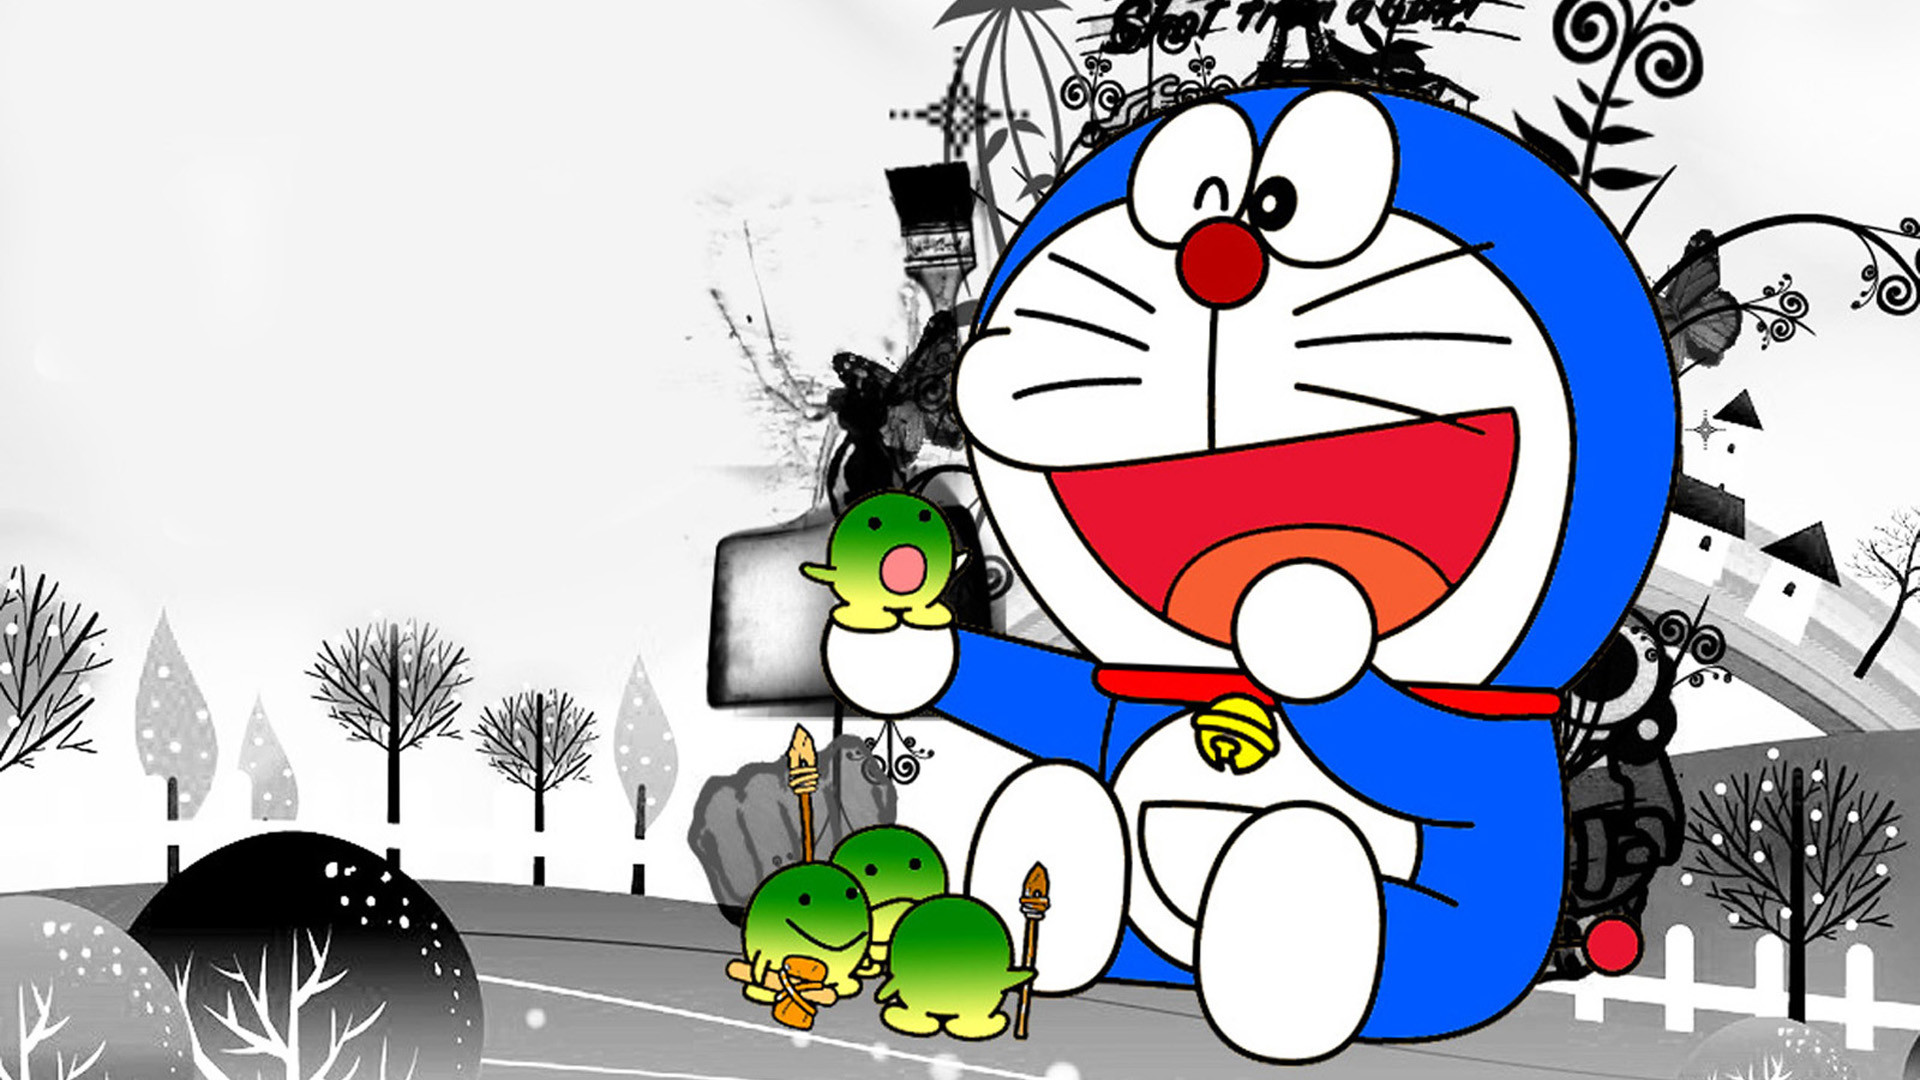 Bạn là fan Đôrêmon đích thực thì không thể bỏ qua bộ sưu tập hình nền Đôrêmon đáng yêu và dễ thương này. Tải ngay để tươi vui màn hình điện thoại của mình với Doraemon và bạn bè nhé!